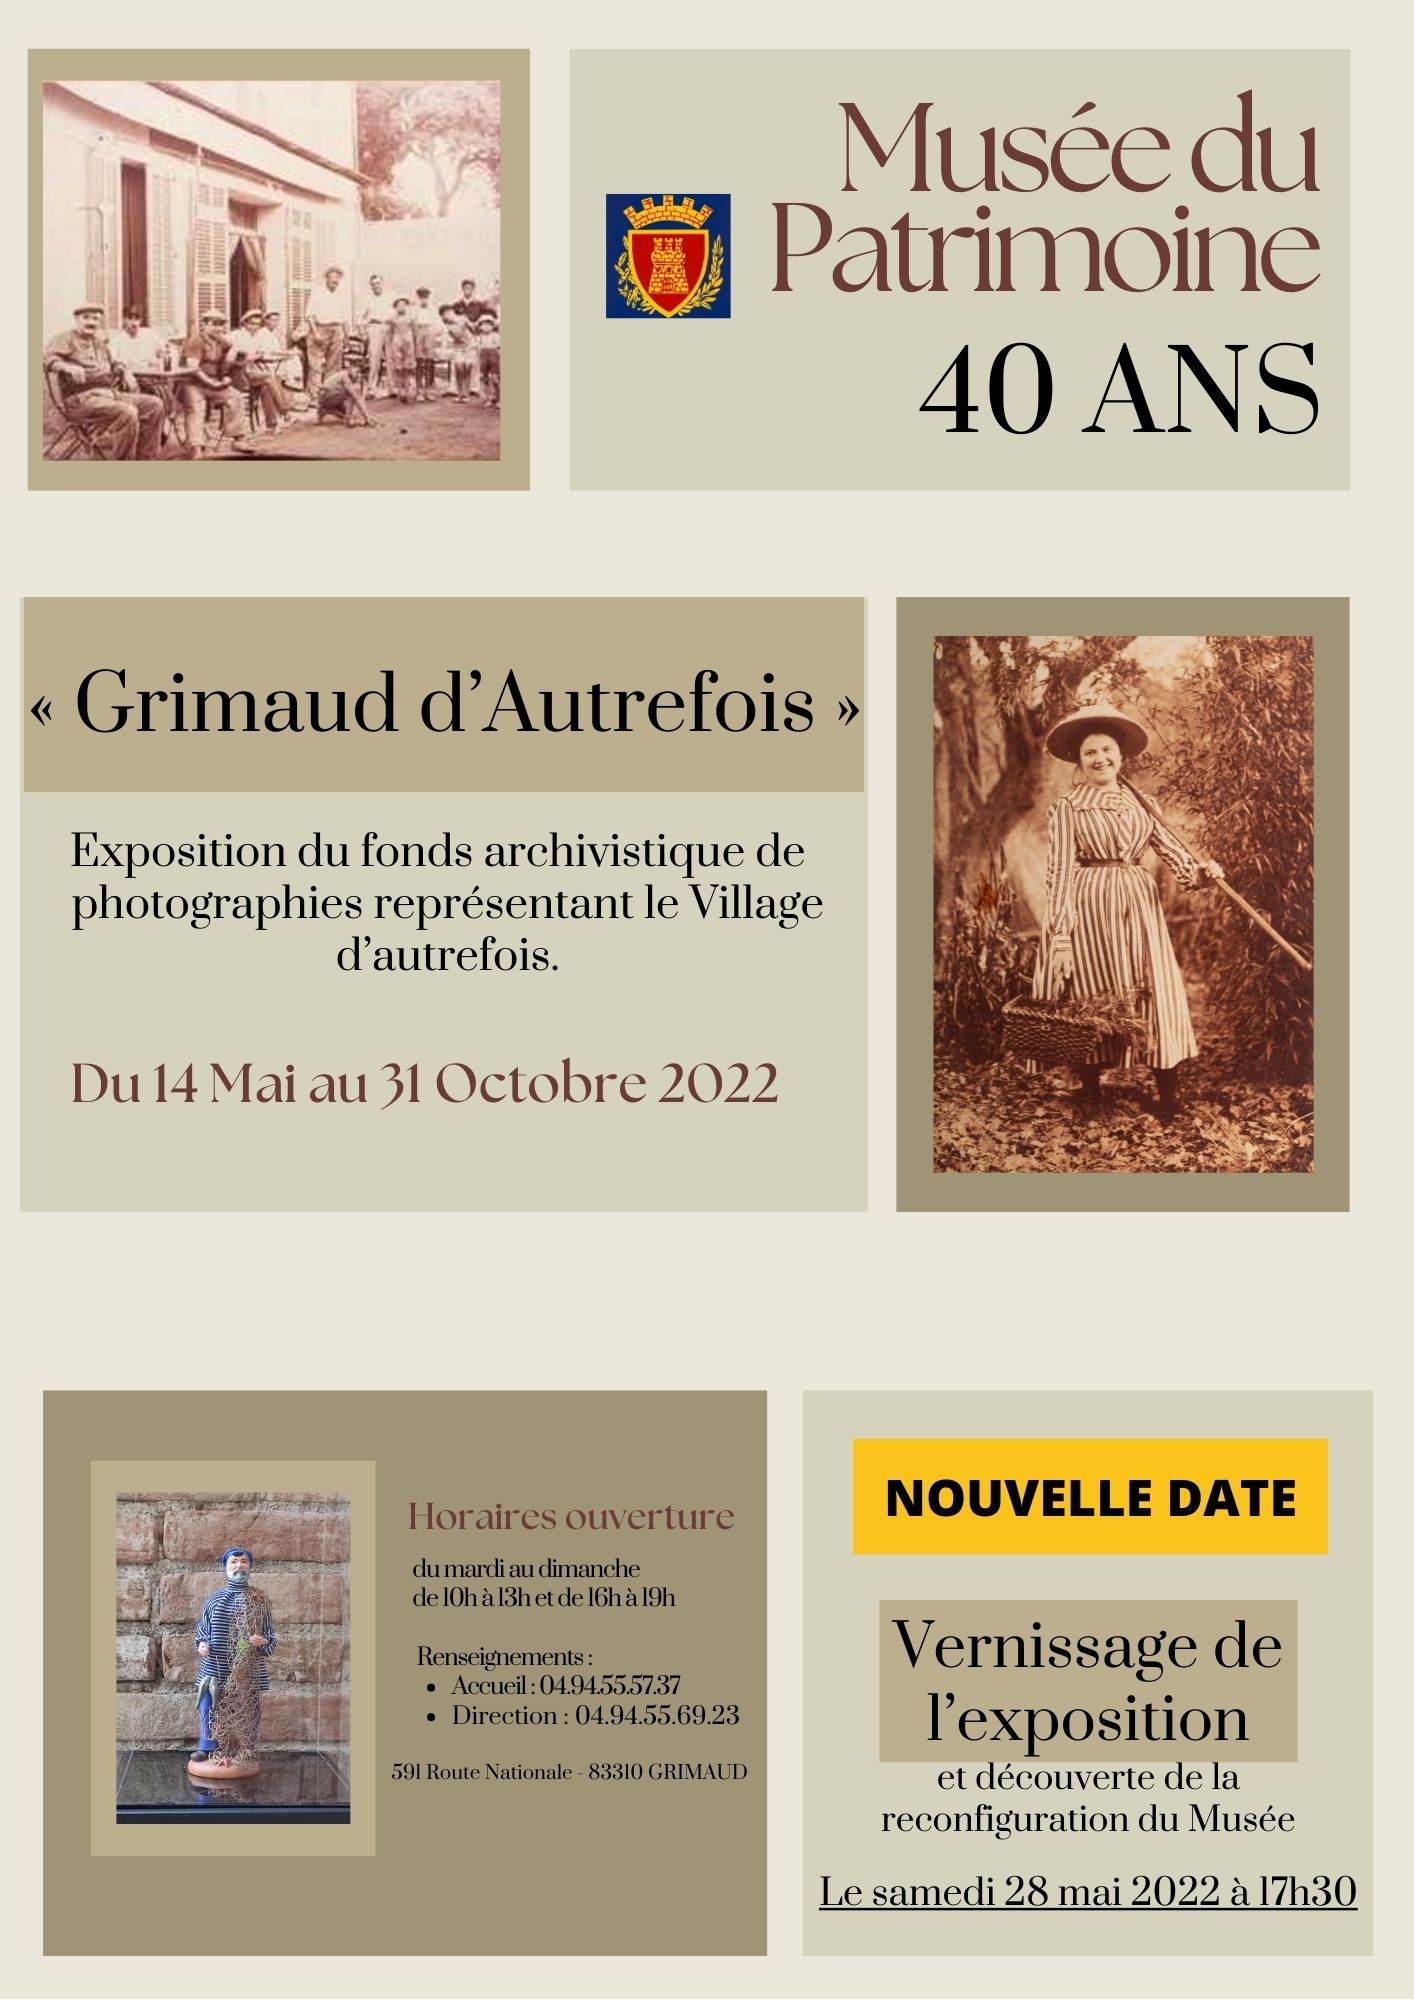 Photo exhibition: Grimaud d'Autrefois